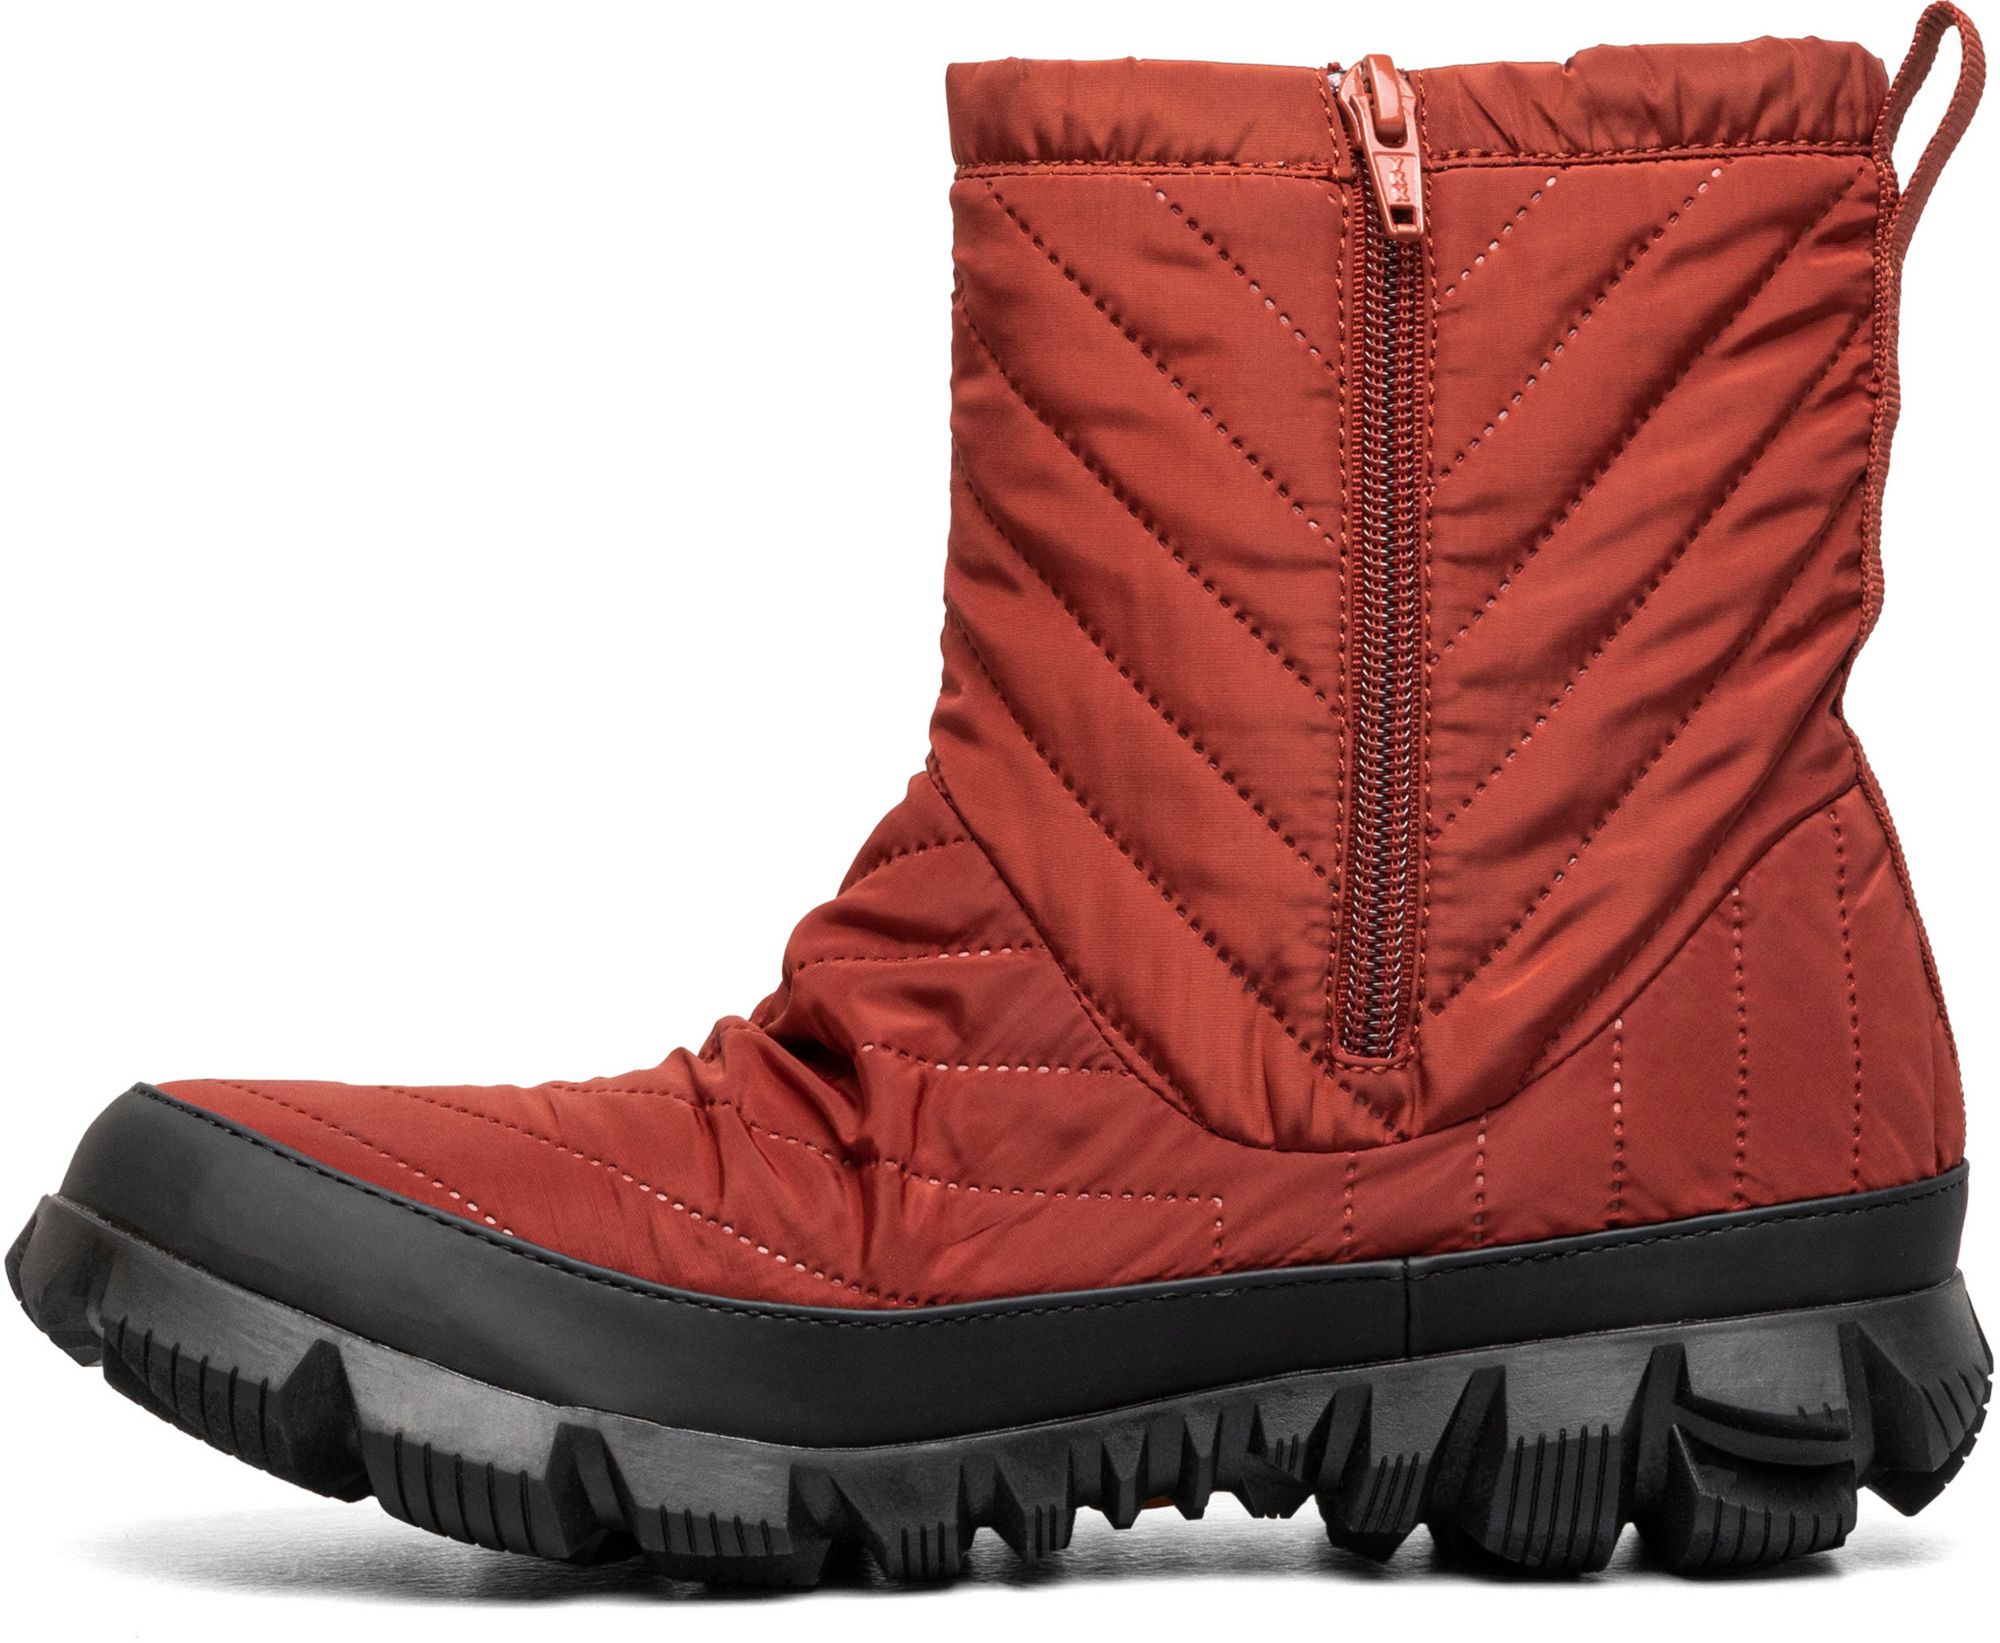 Bogs Women's Snowcata Mid Waterproof Winter Boots